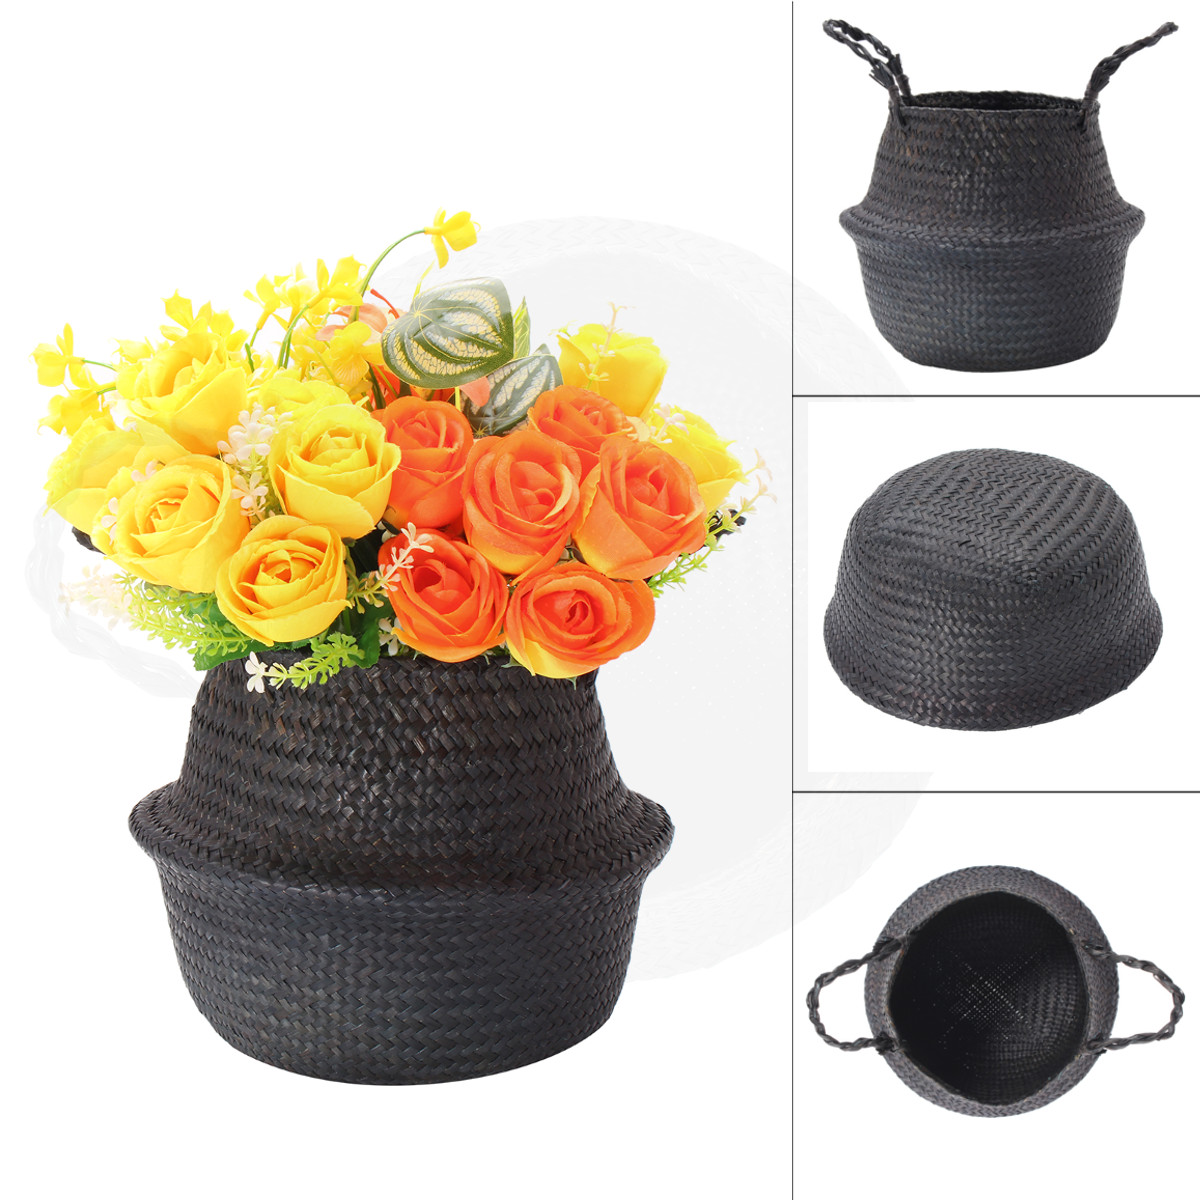 Black-Seagrass-Belly-Basket-Storage-Holder-Plant-Pot-Bag-Home-Decoration-Storage-Baskets-1263488